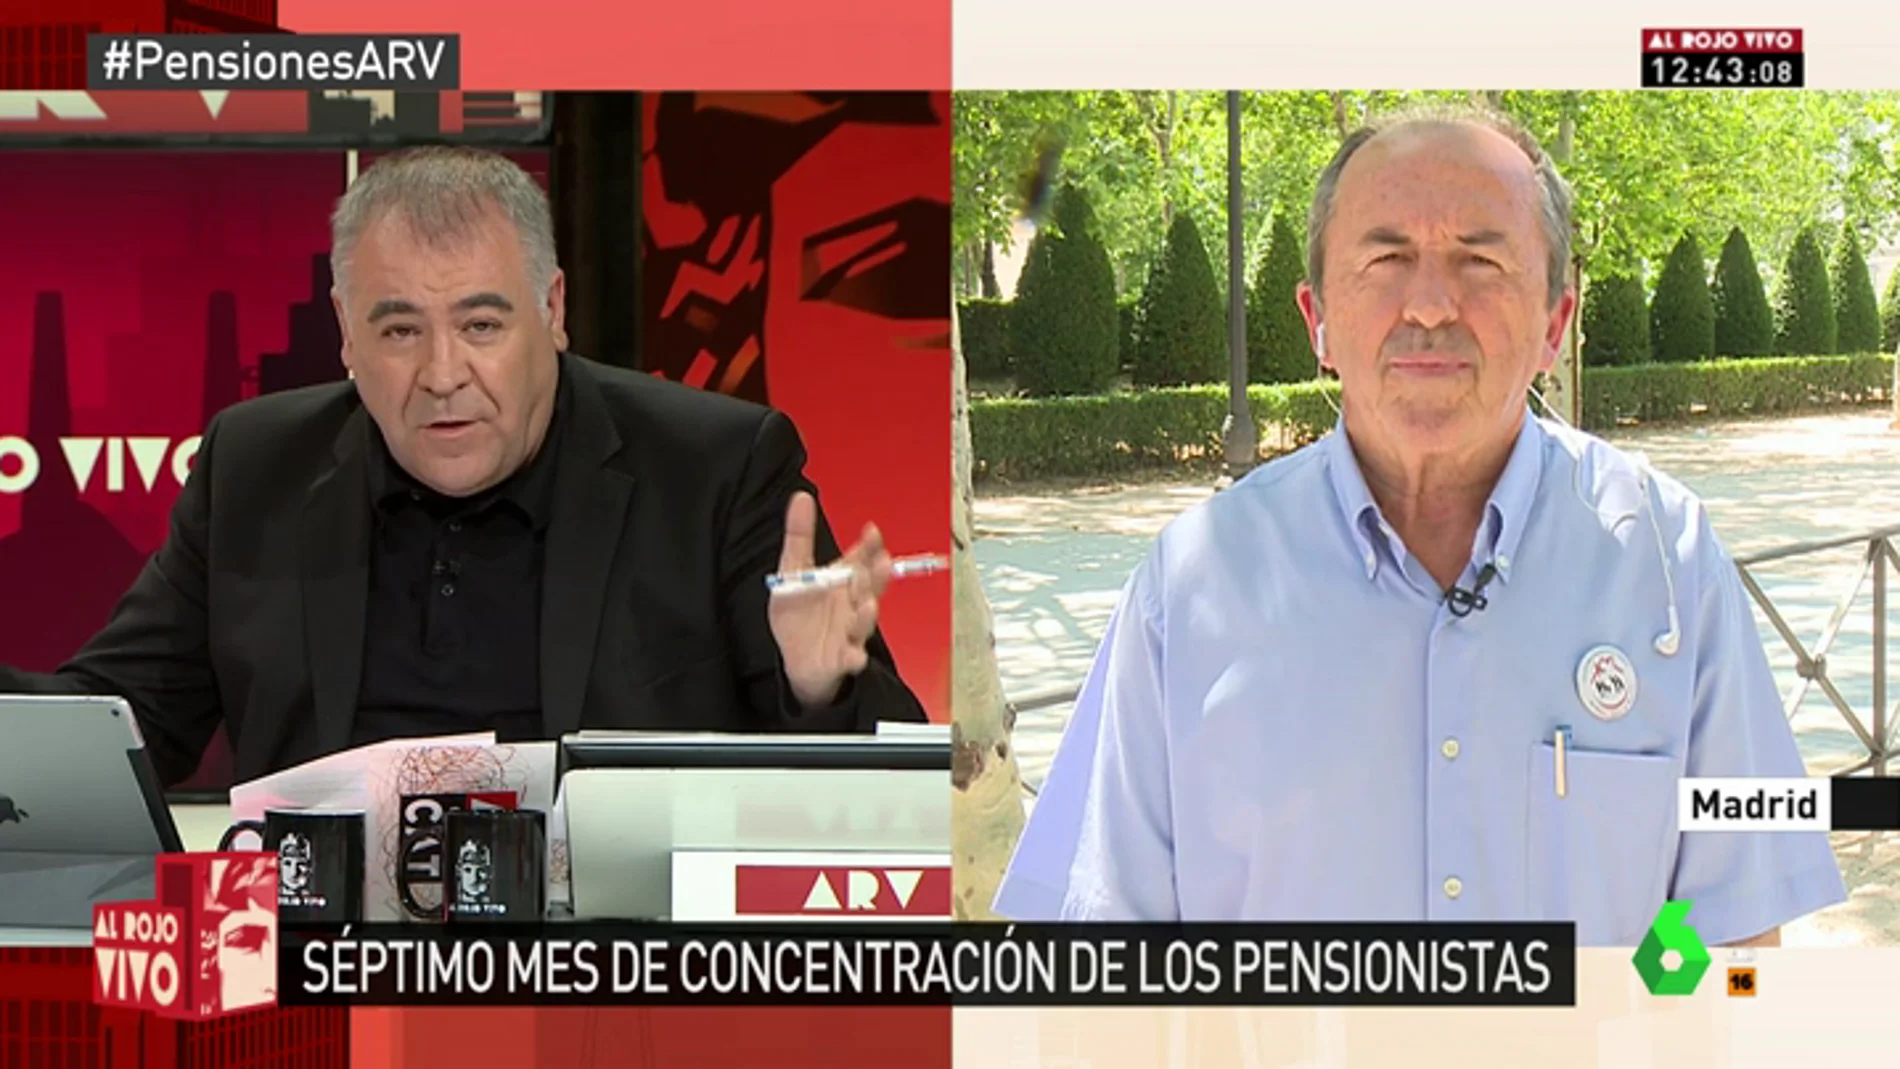 Leopoldo Pelayo: "Los pensionistas de ahora y del futuro no permitiremos que se deteriore el sistema público de pensiones"